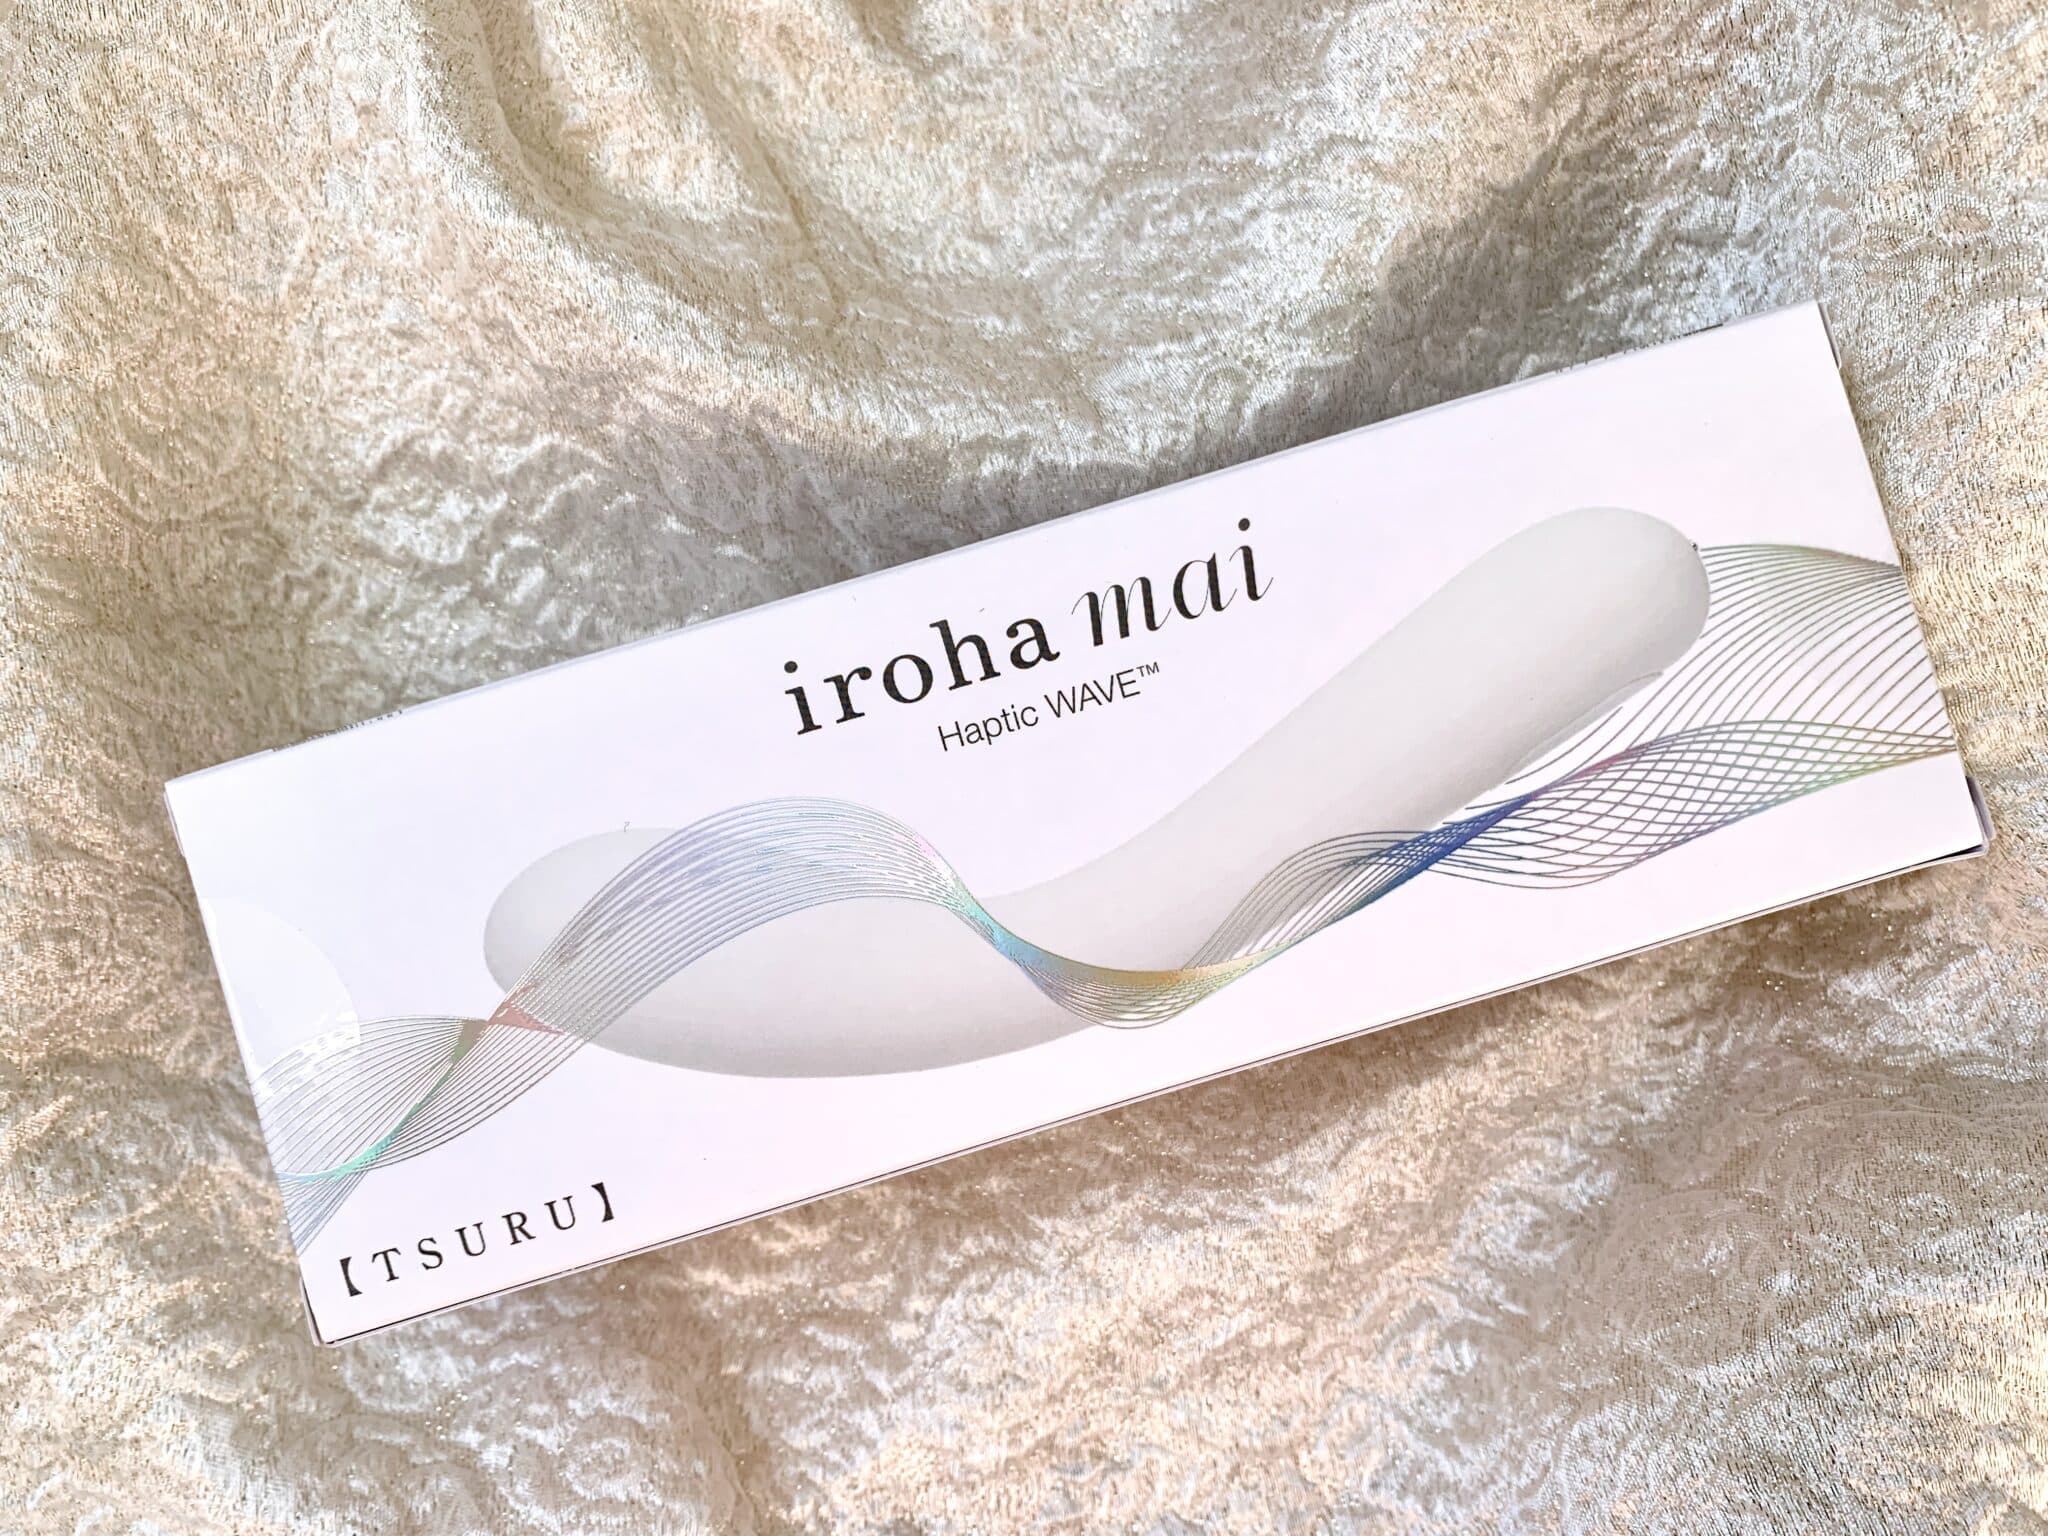 Tenga Iroha Mai A closer Look at it’s packaging